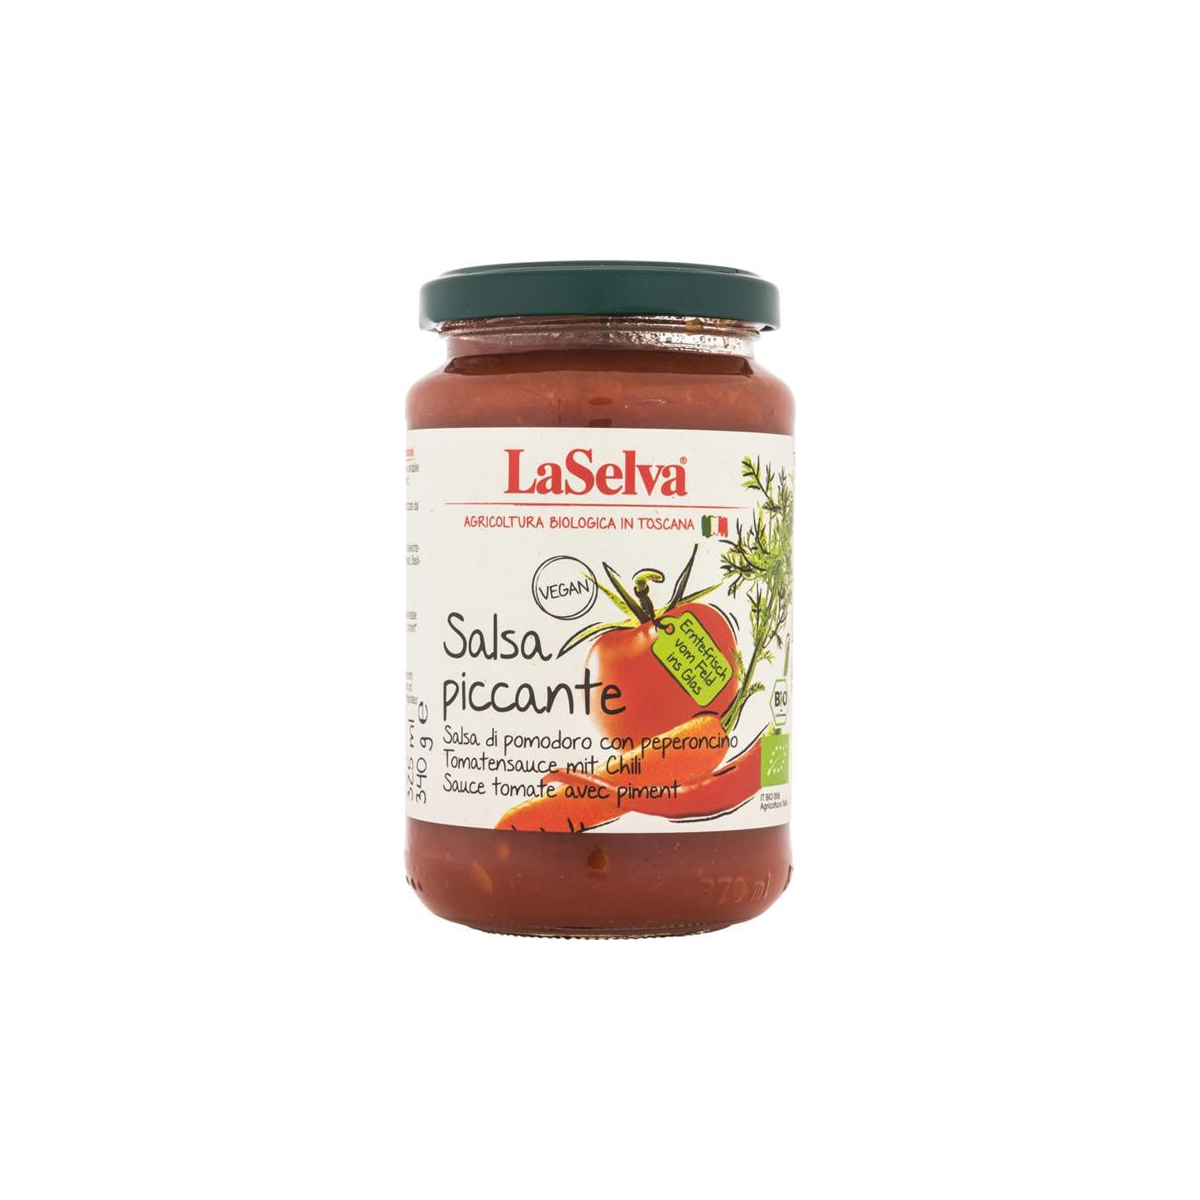 LaSelva - Salsa piccante - Tomatensauce leicht pikant